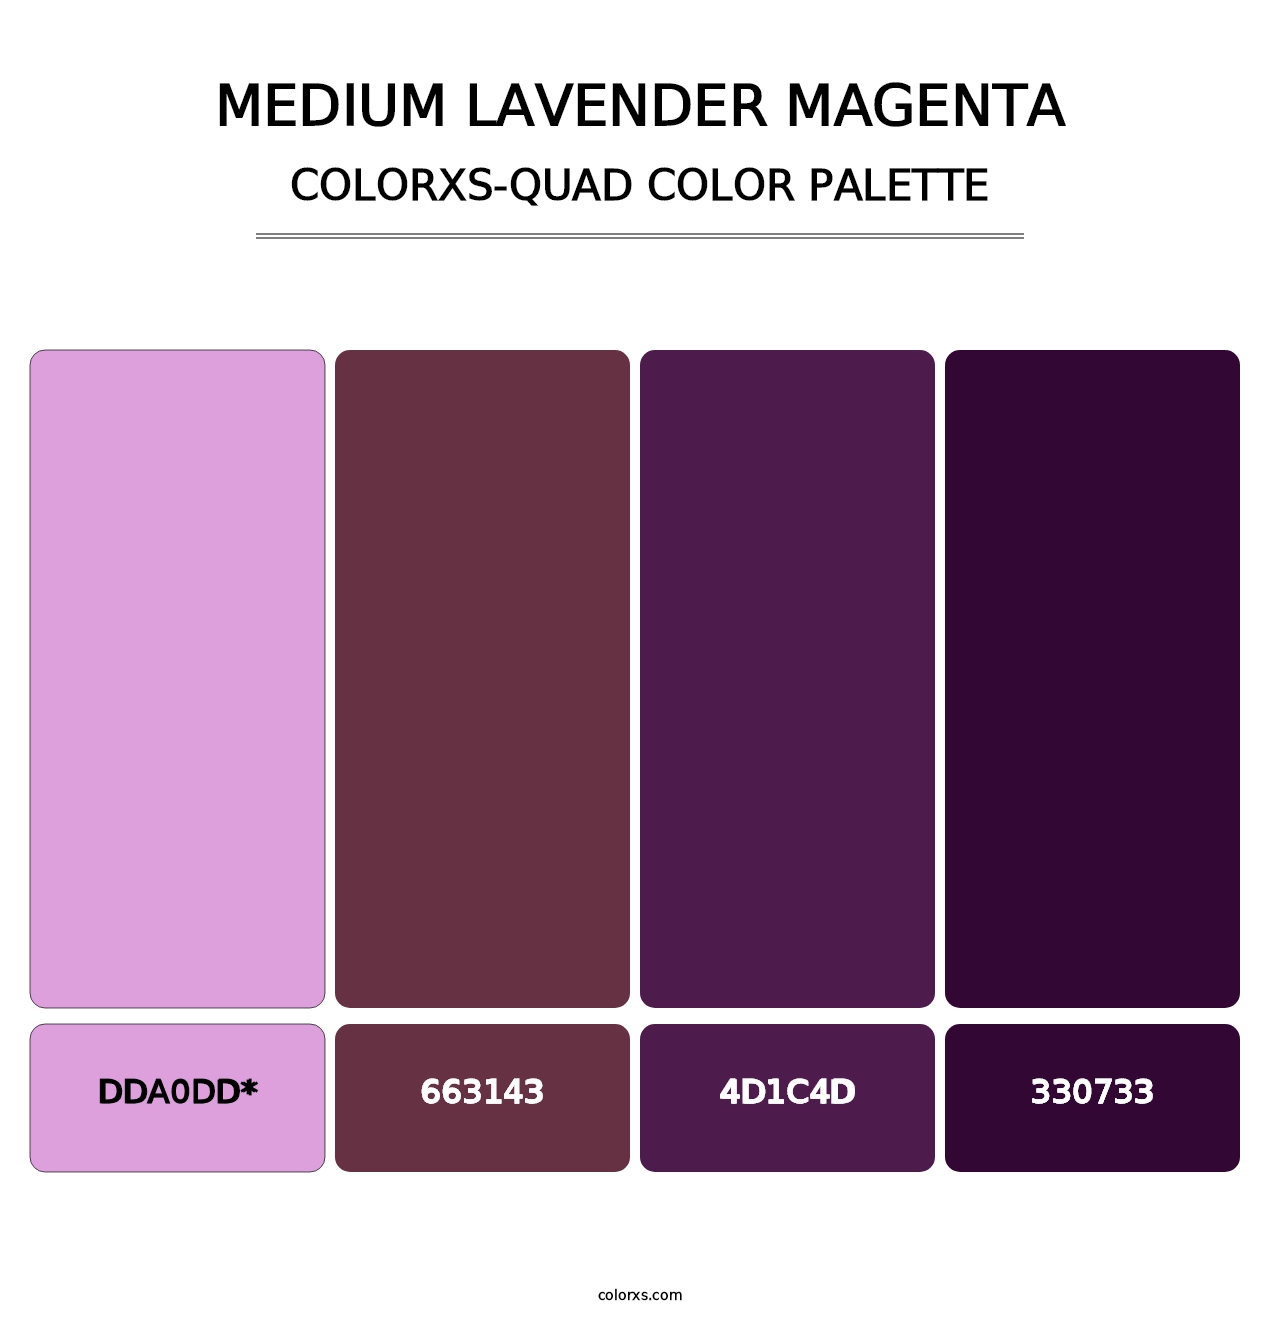 Medium Lavender Magenta - Colorxs Quad Palette